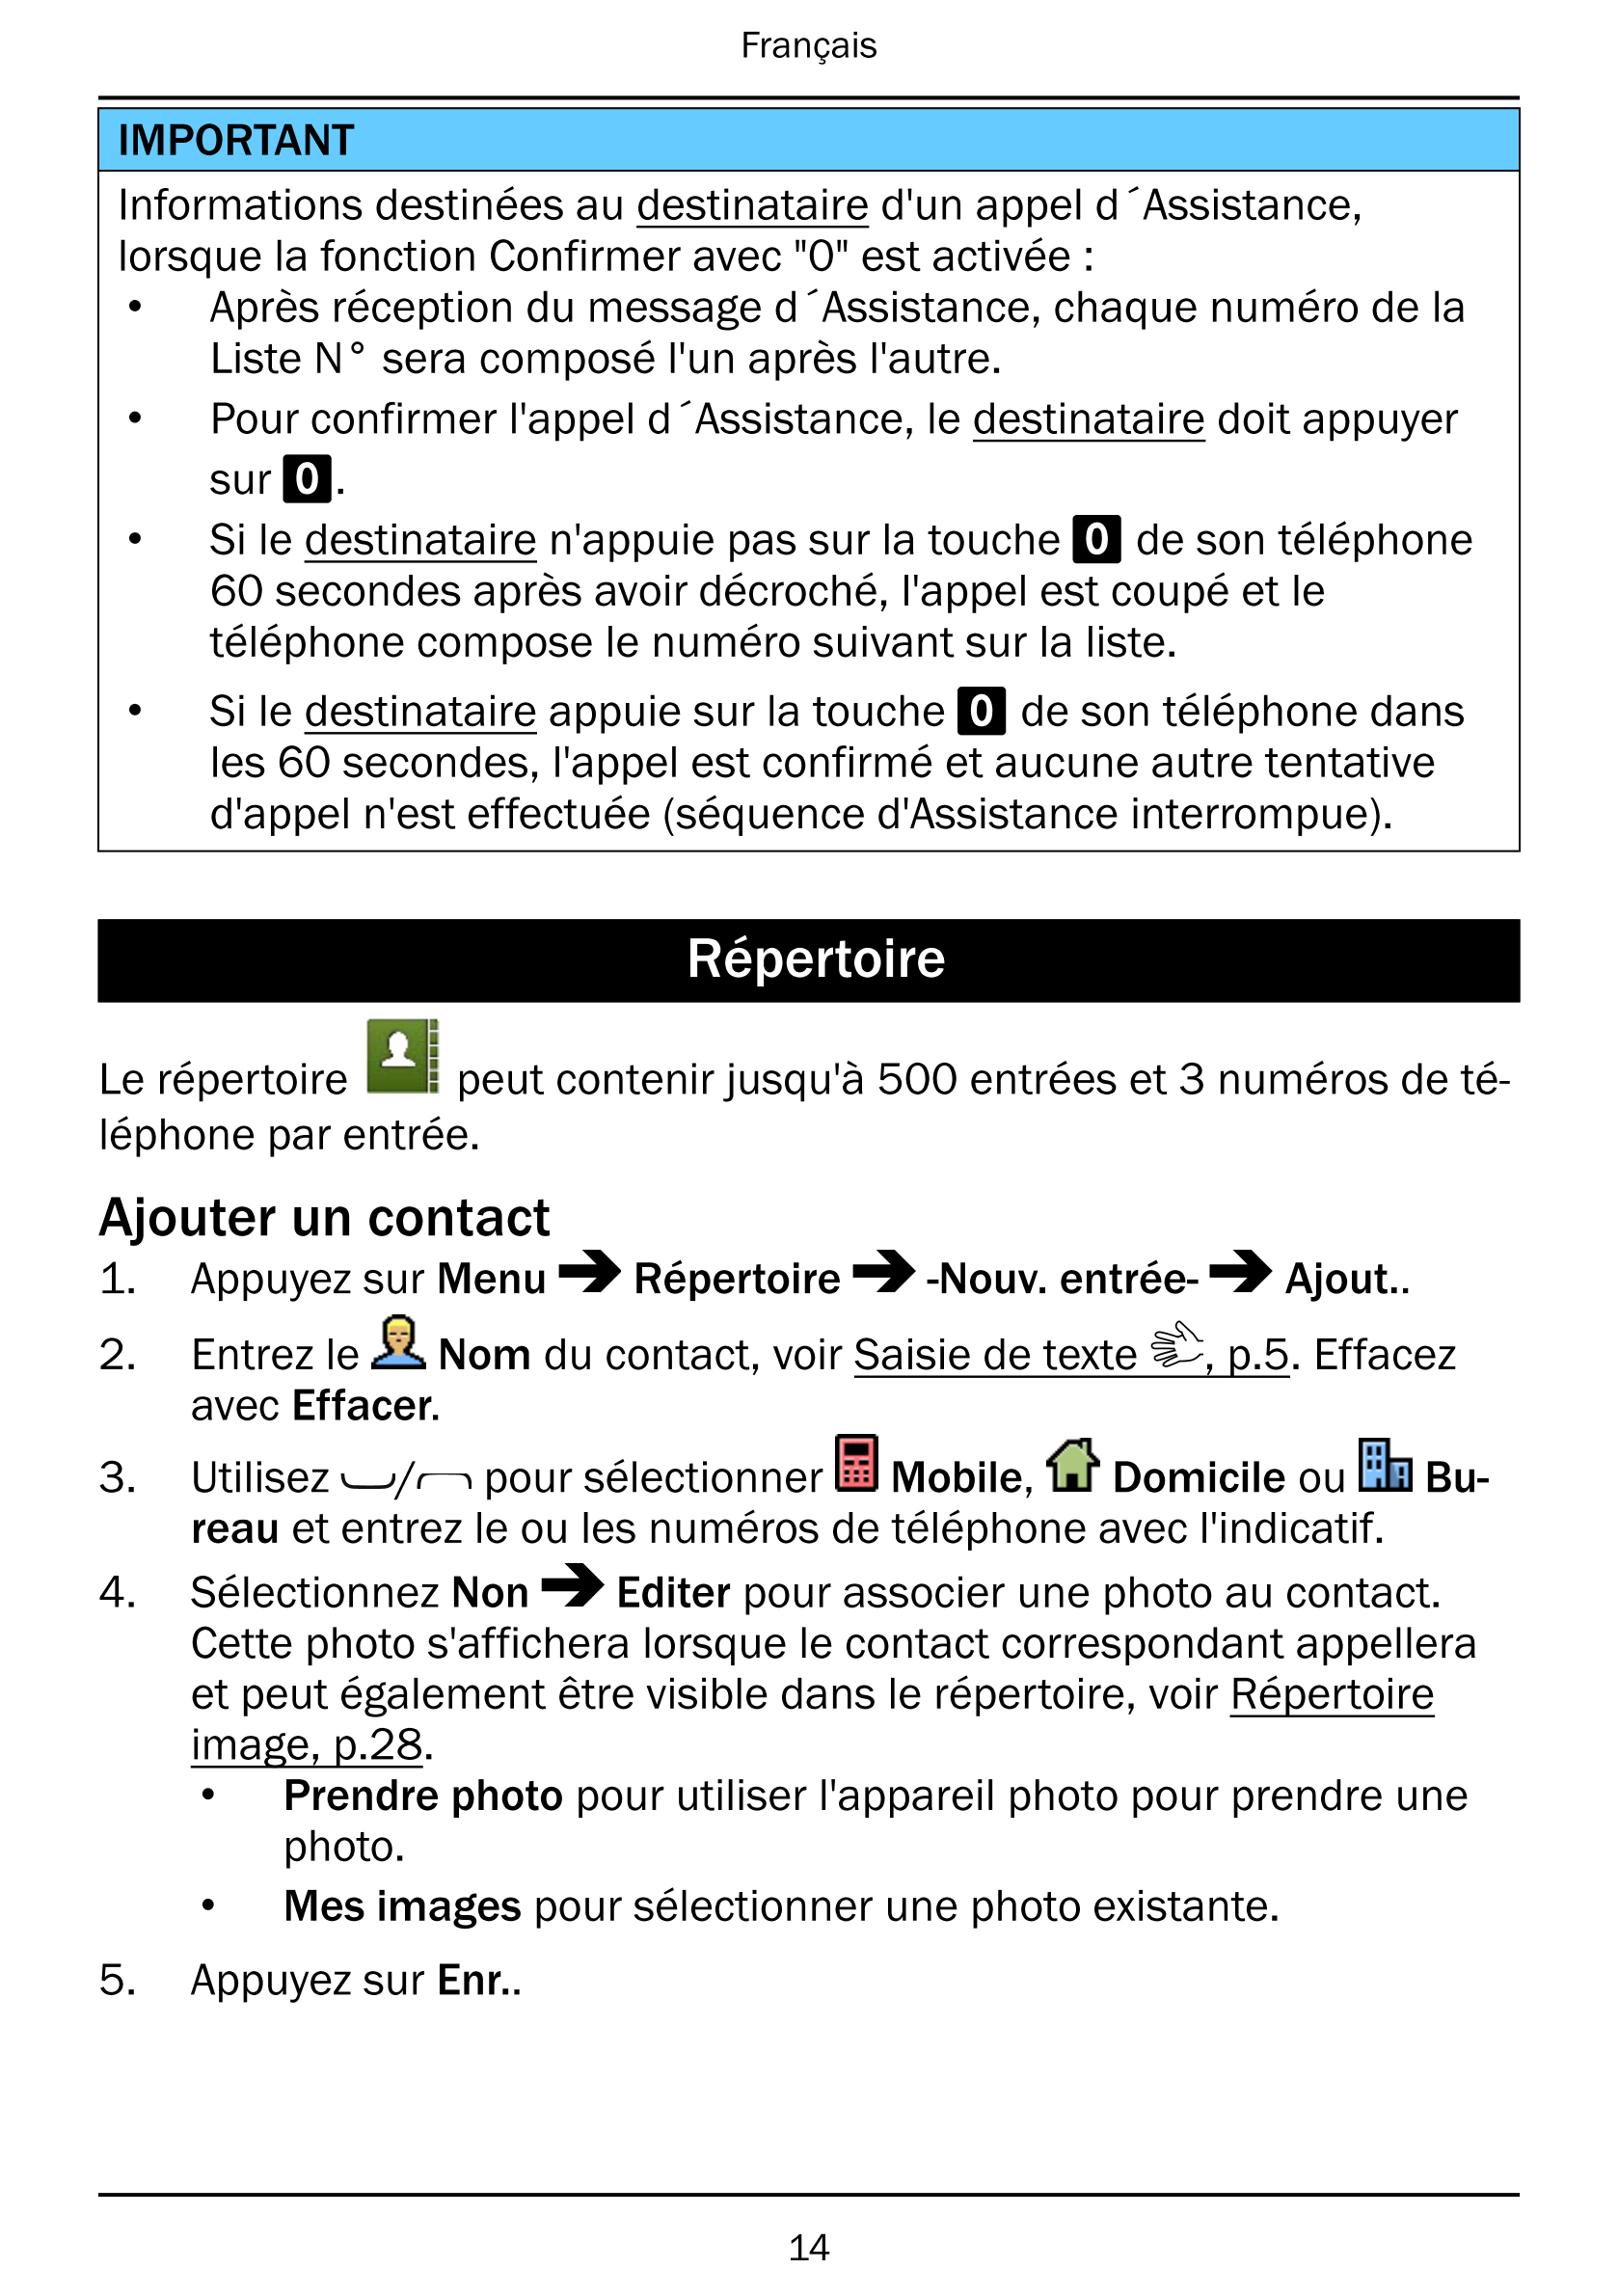 Français
IMPORTANT
Informations destinées au destinataire d'un appel d´Assistance,
lorsque la fonction Confirmer avec "0" est ac